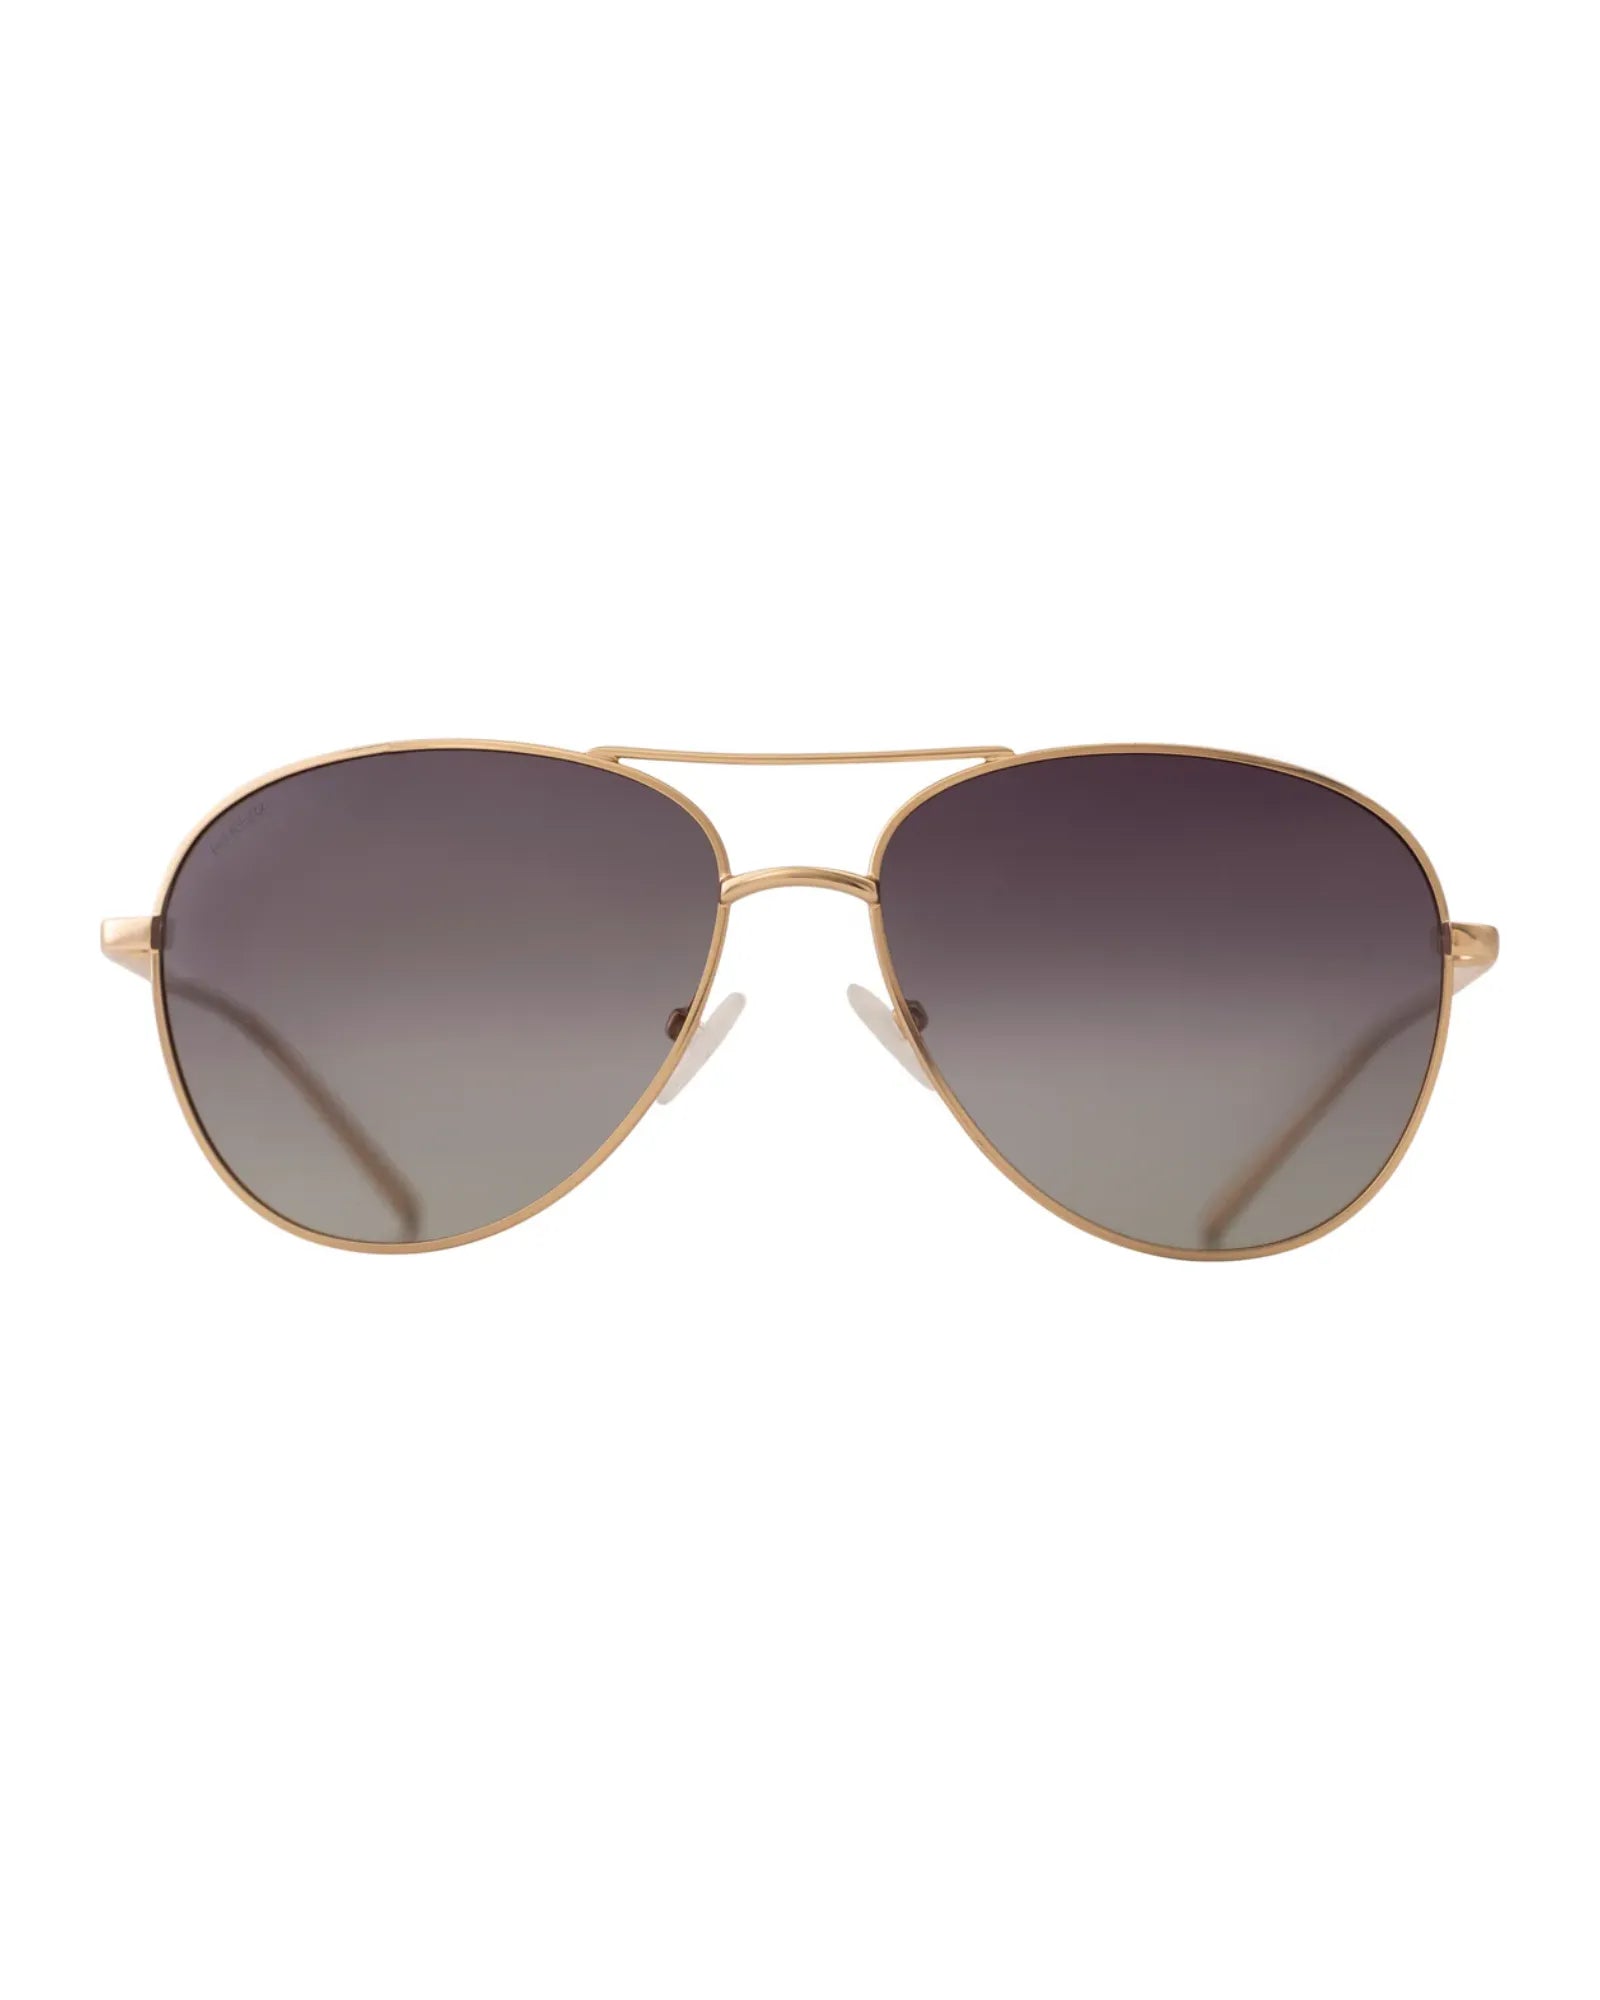 NANI Sunglasses - Grey/Gold